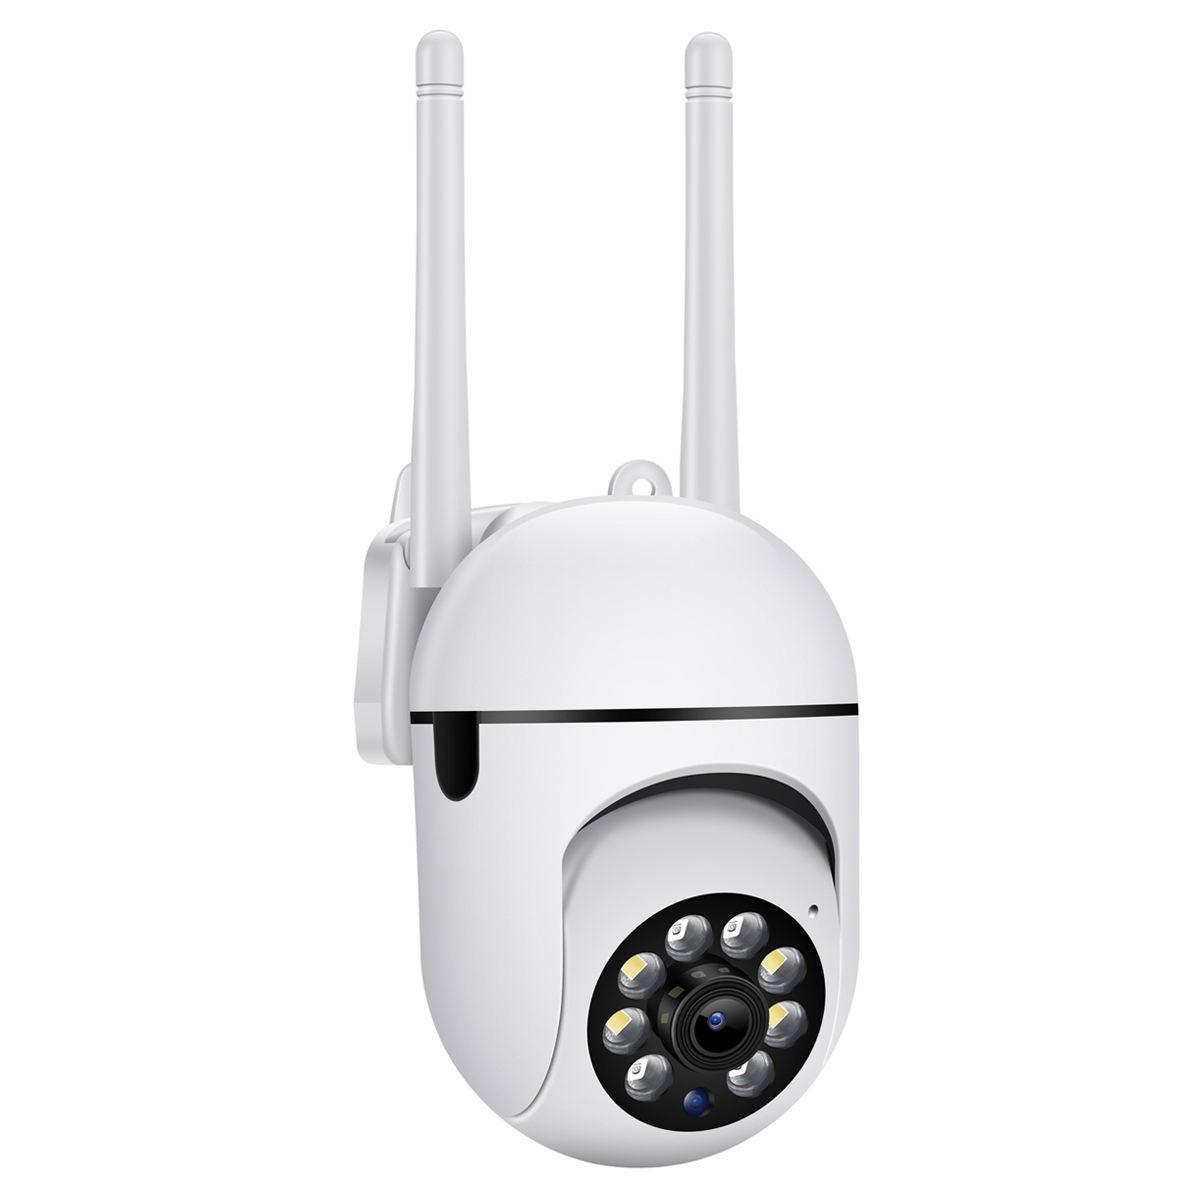 V380 Pro HD Wireless IP Camera Indoor Surveillance Cam: Buy V380 Pro HD Wireless IP Camera in Sri Lanka | ido.lk